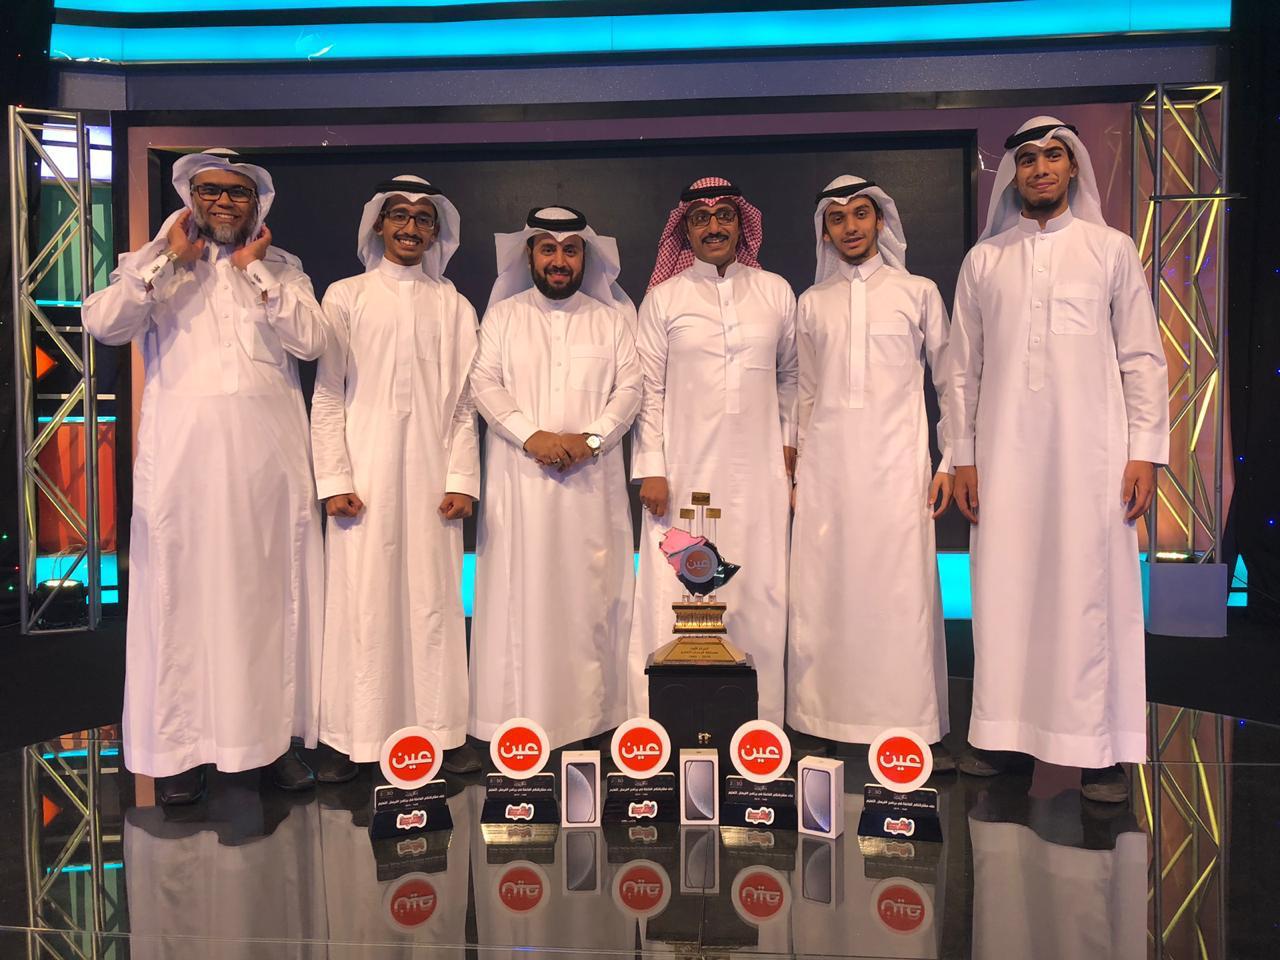 طلاب تعليم مكة المكرمة يُحققون لقب بطولة فرسان التعليم و40 ألف ريال